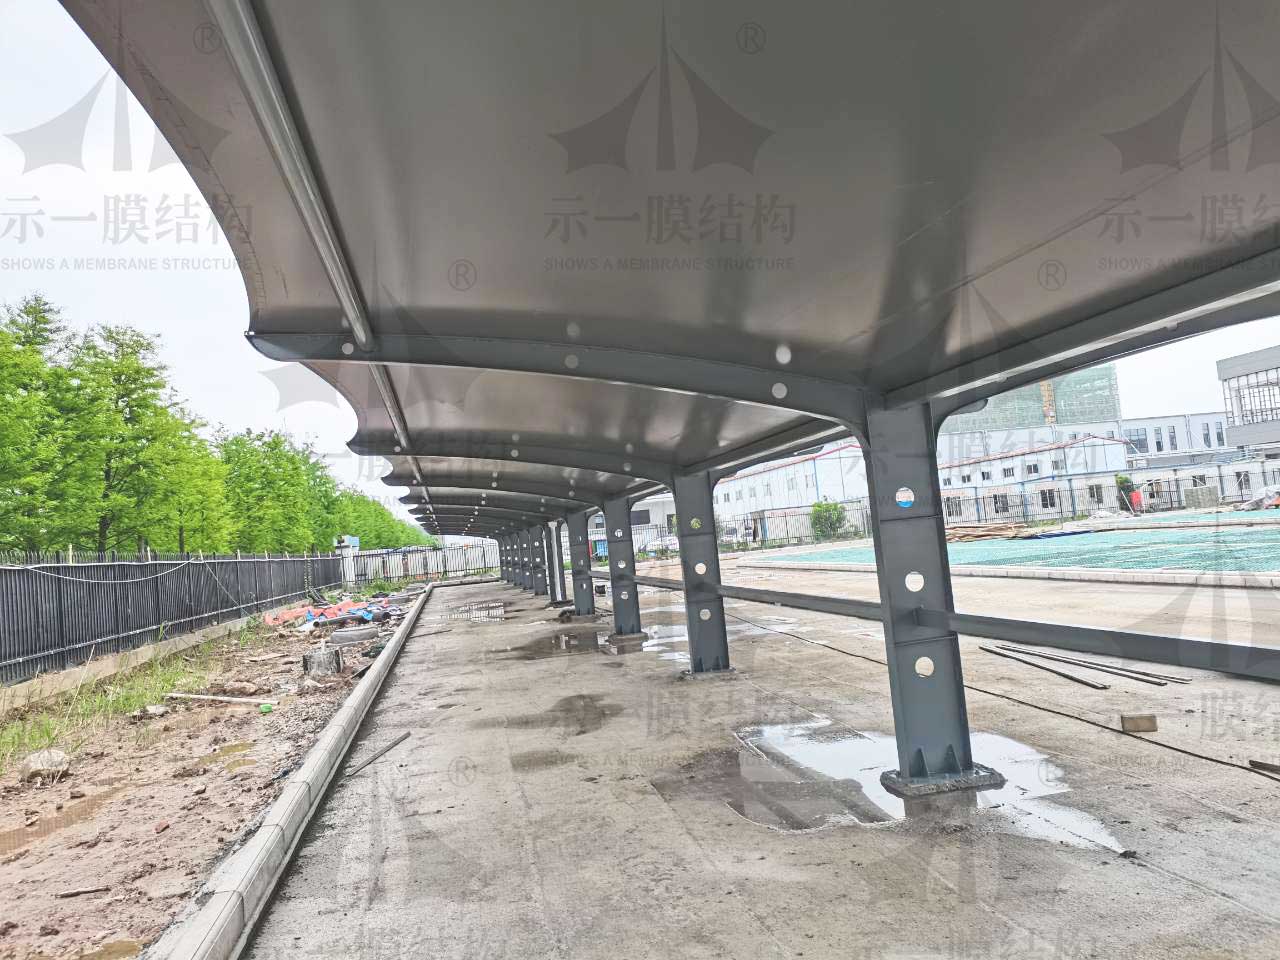 上海示一膜结构武汉嘉民物流园膜结构停车棚